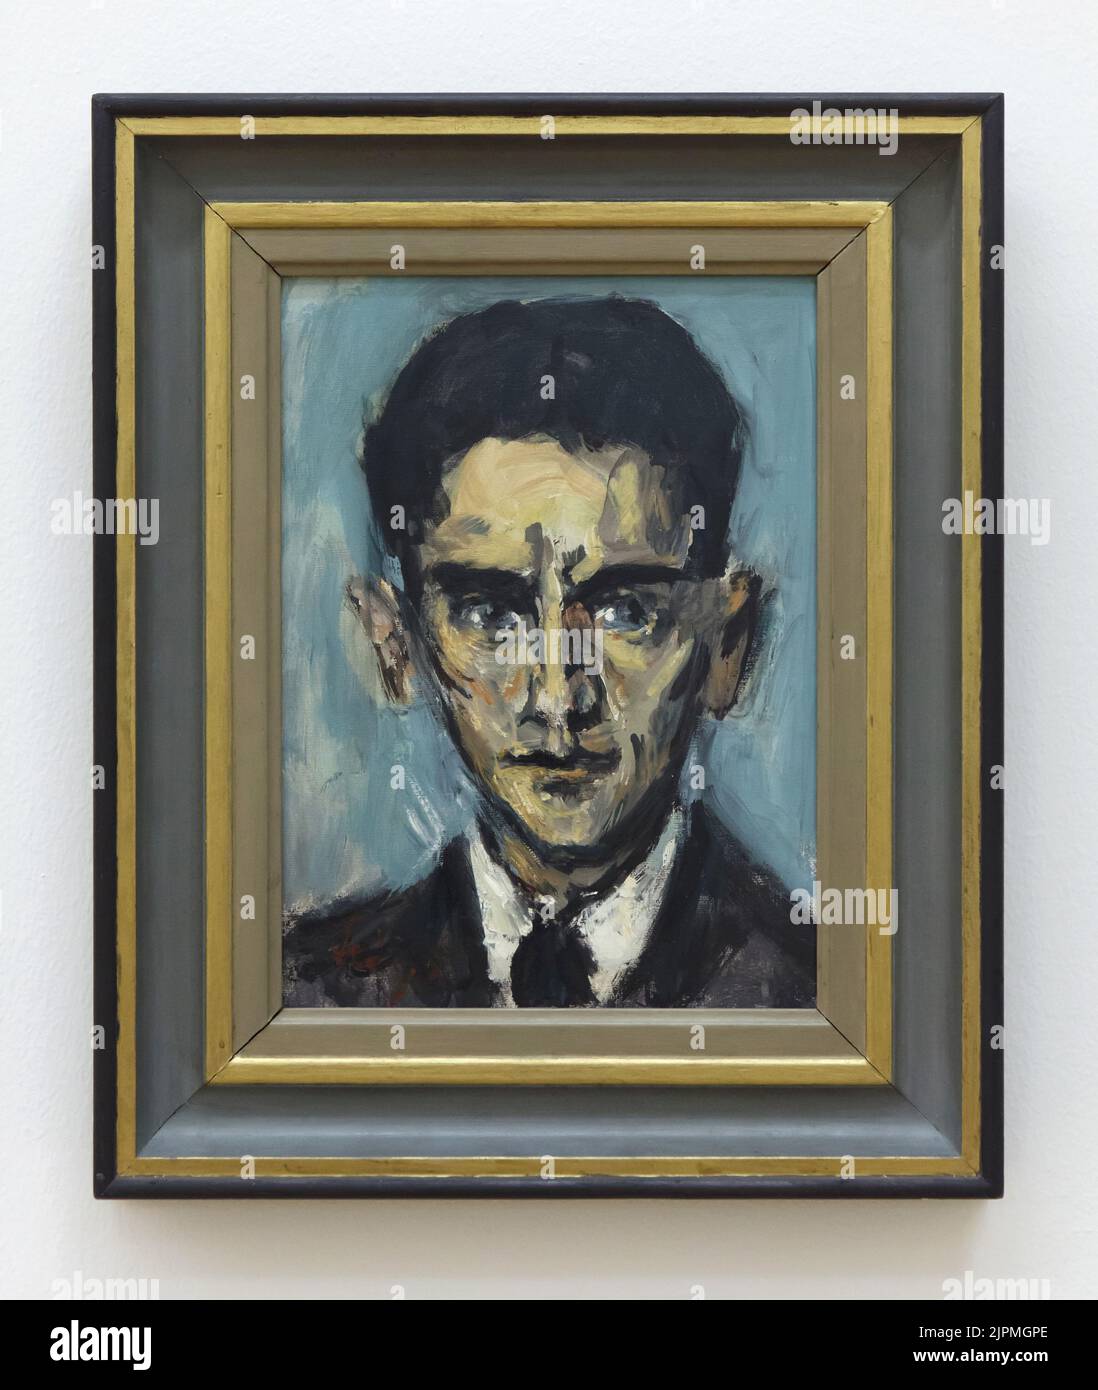 Ritratto di Franz Kafka del pittore ceco-ebraico Bedřich (Friedrich) Feigl (1940) su disрlау nel Кunstfоrum Оstdеutsсhе Gаlеriе a Rеgеnsburg, Gеrmаnу. Foto Stock